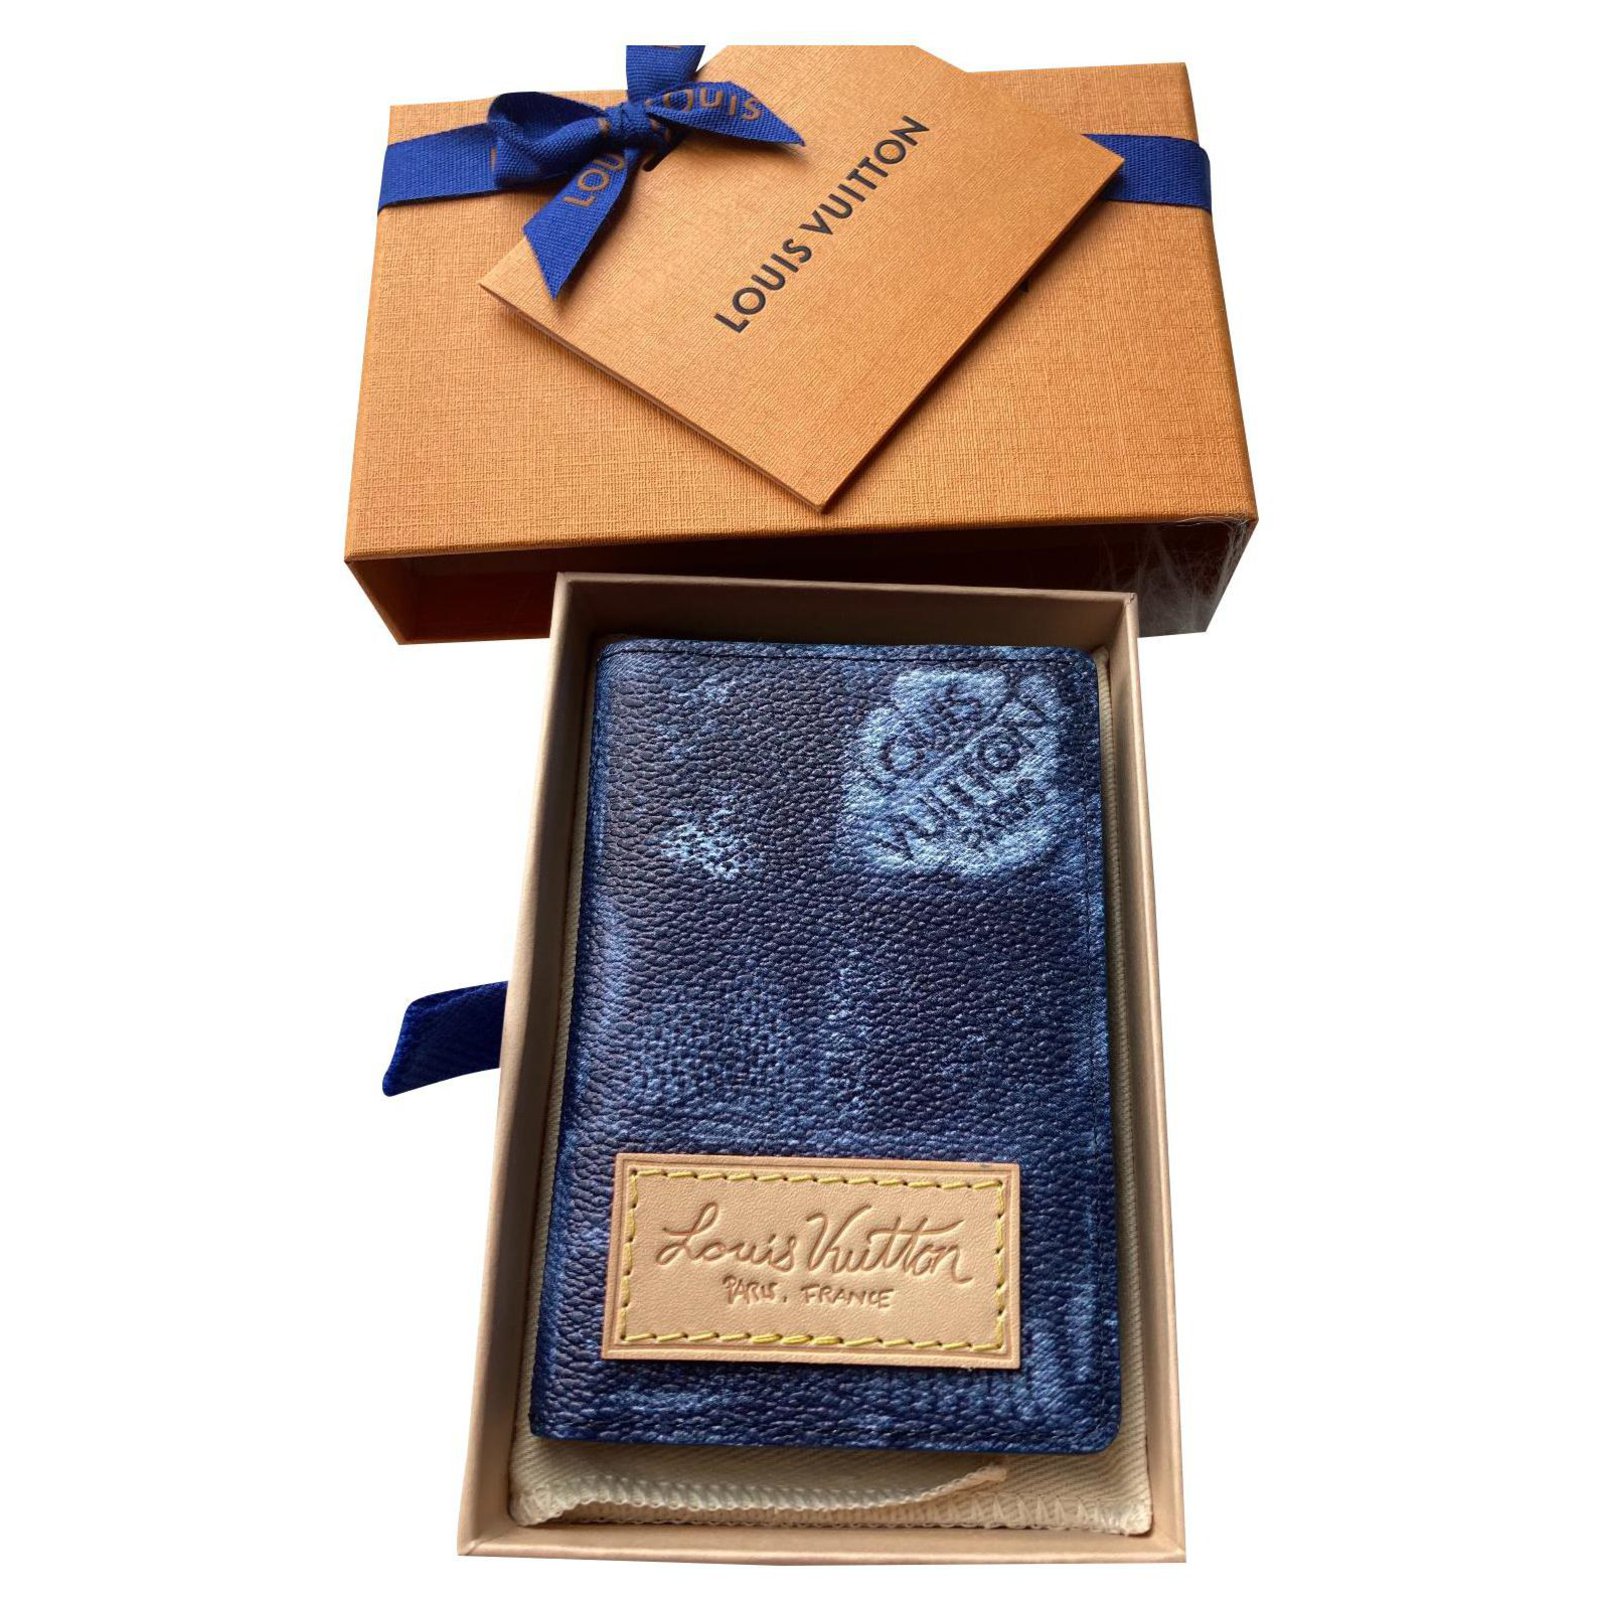 Louis Vuitton, Accessories, Louis Vuitton Wallet Box